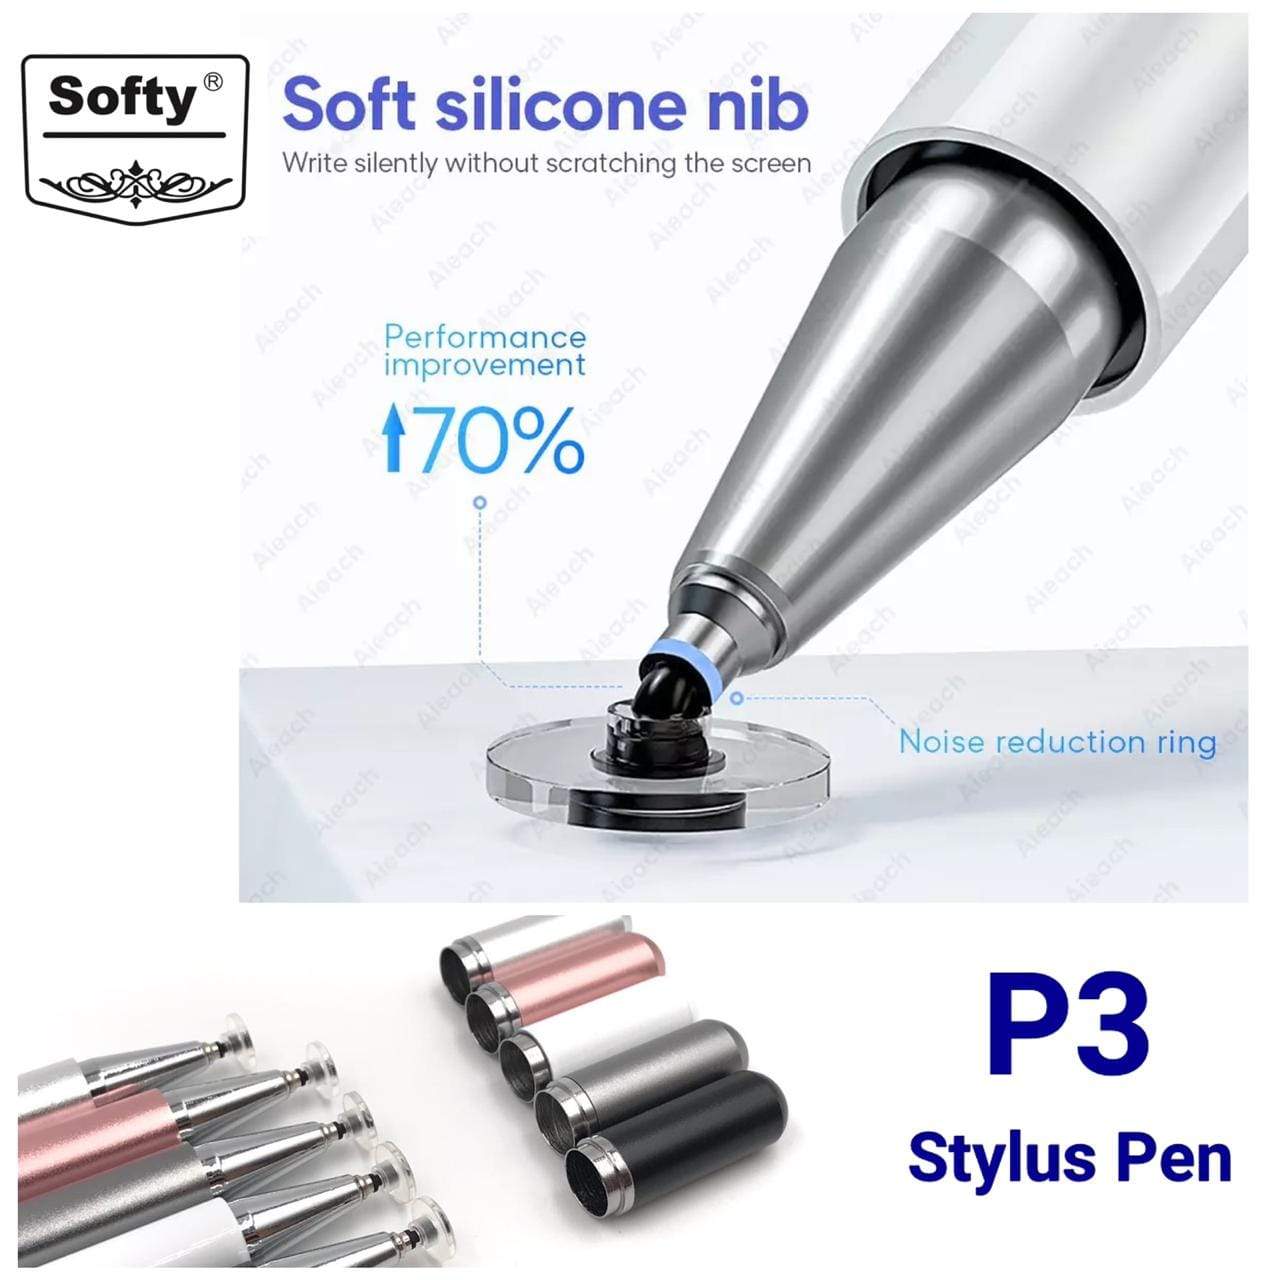 softy stylus pen P-3-stylus pen-dealsplant